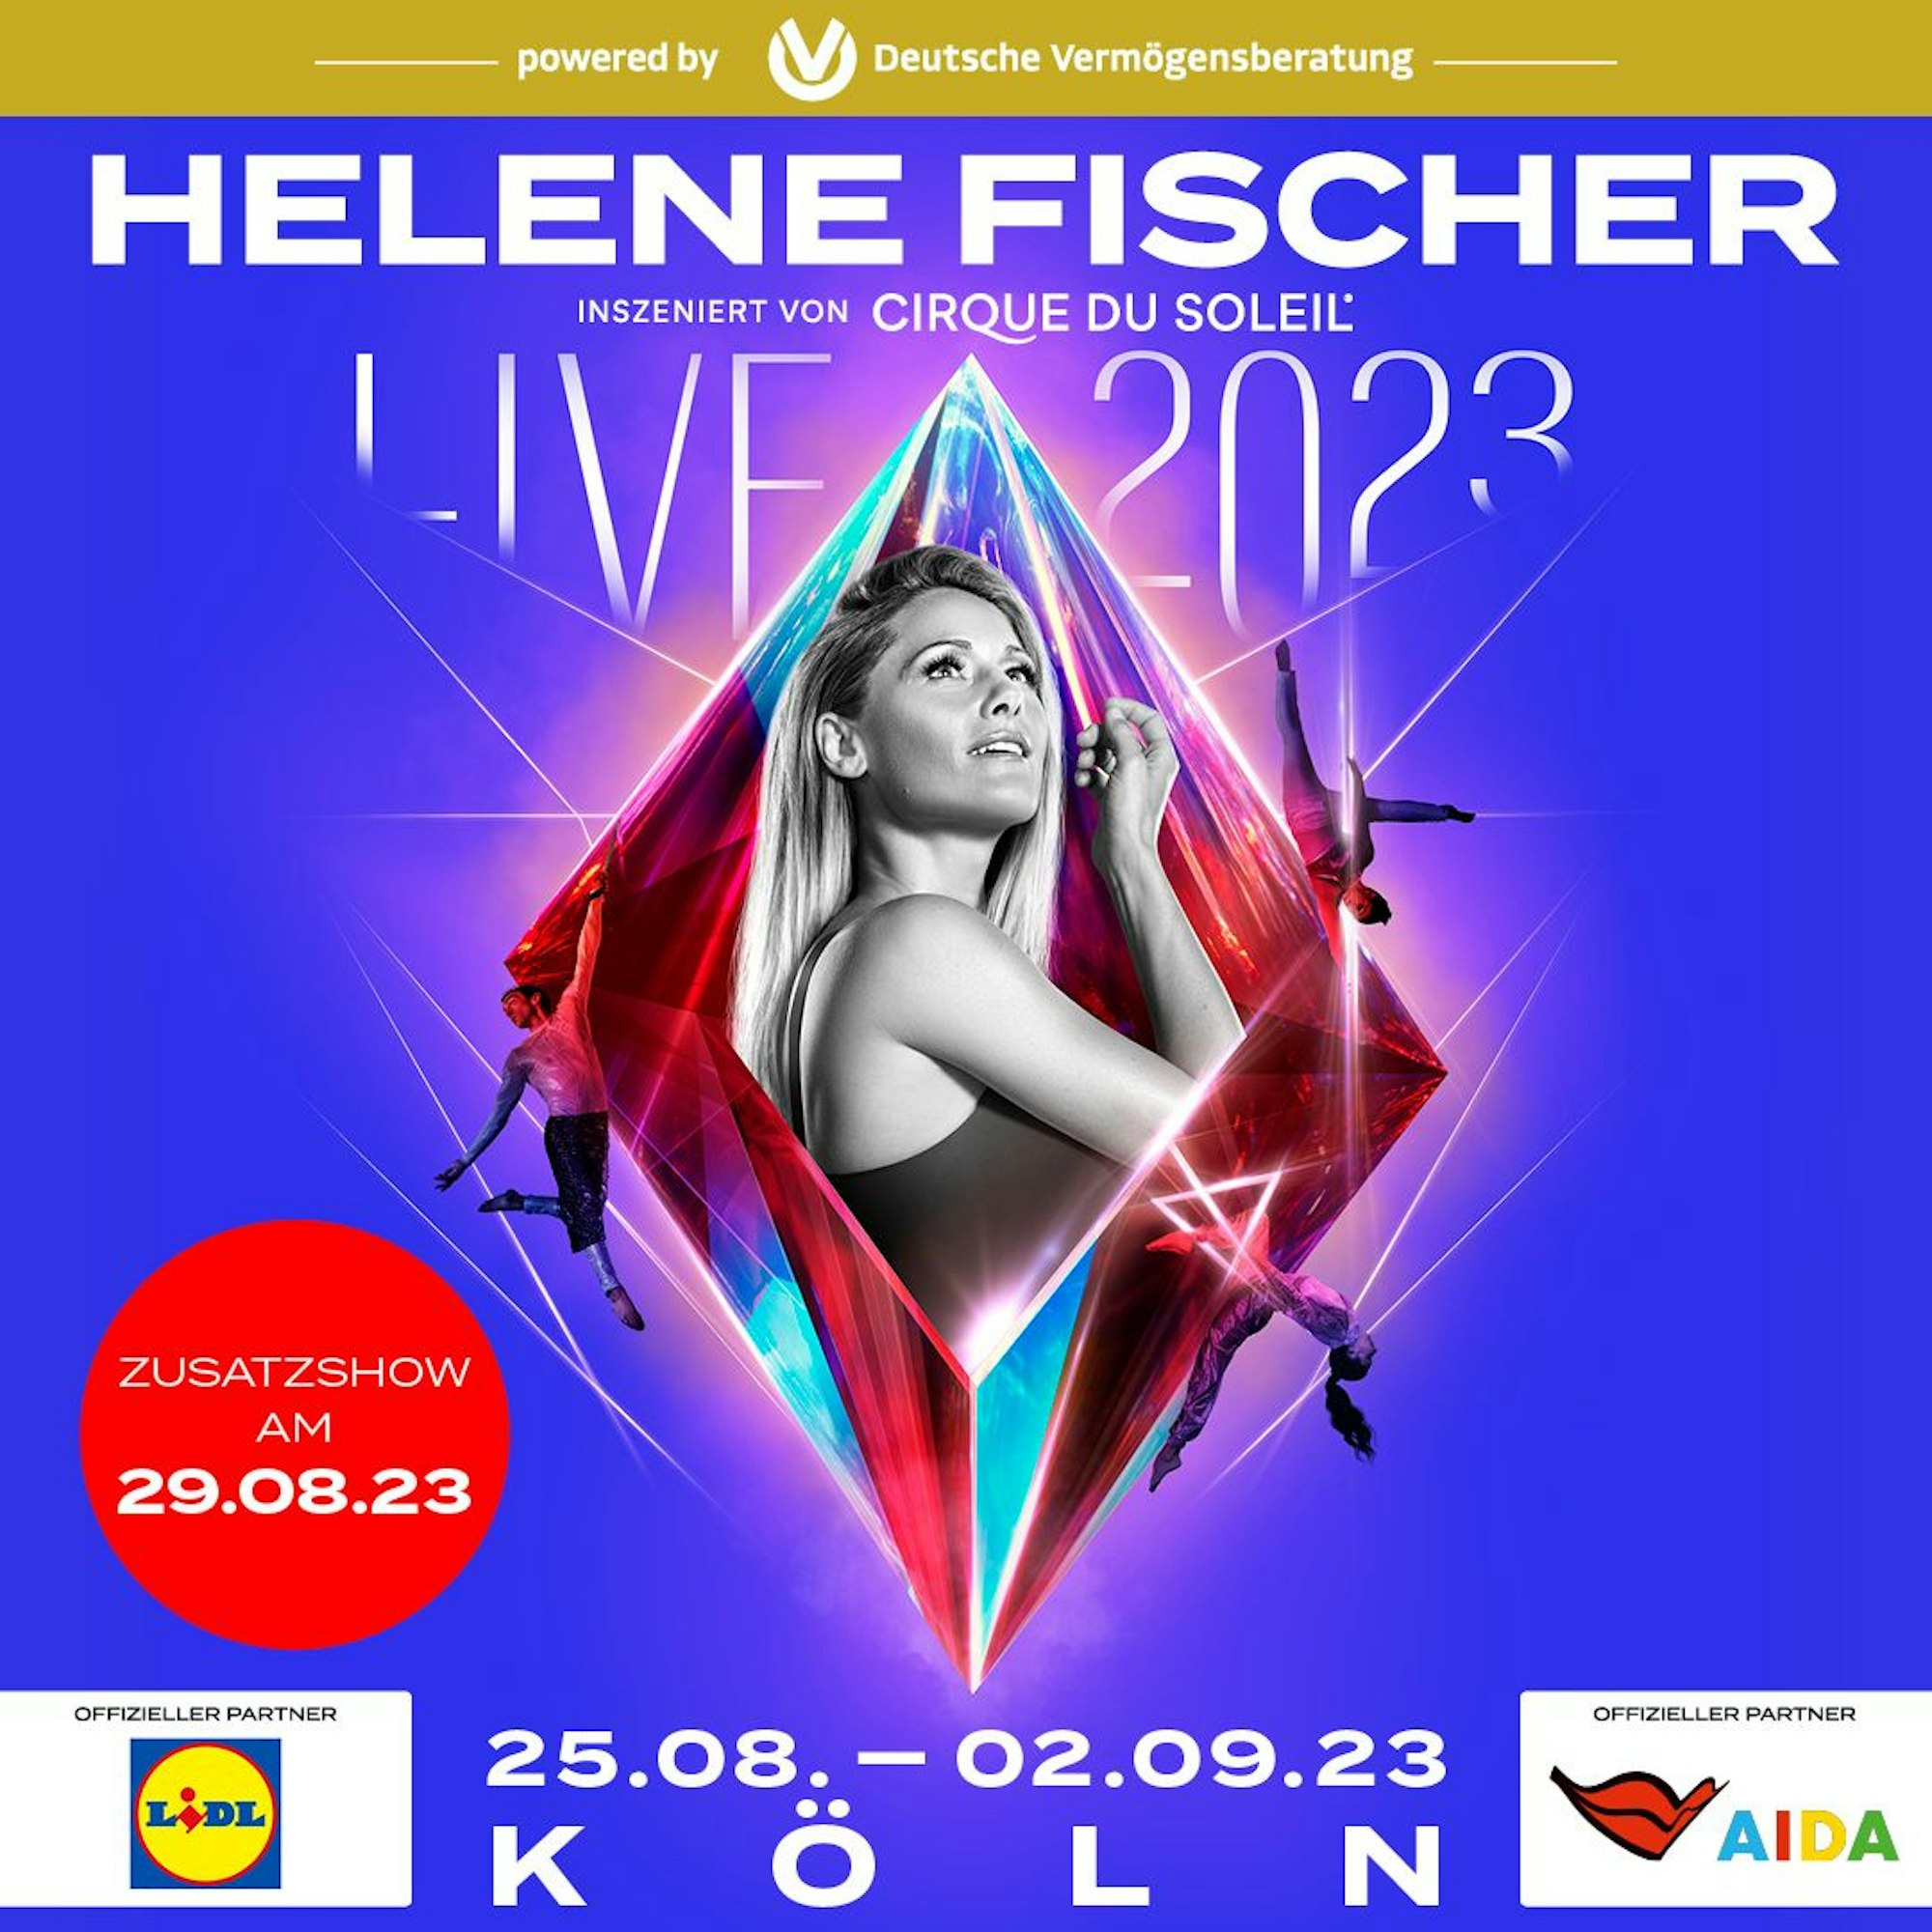 Helene Fischer Zusatzshow am 29.08.2023 in der LANXESS arena